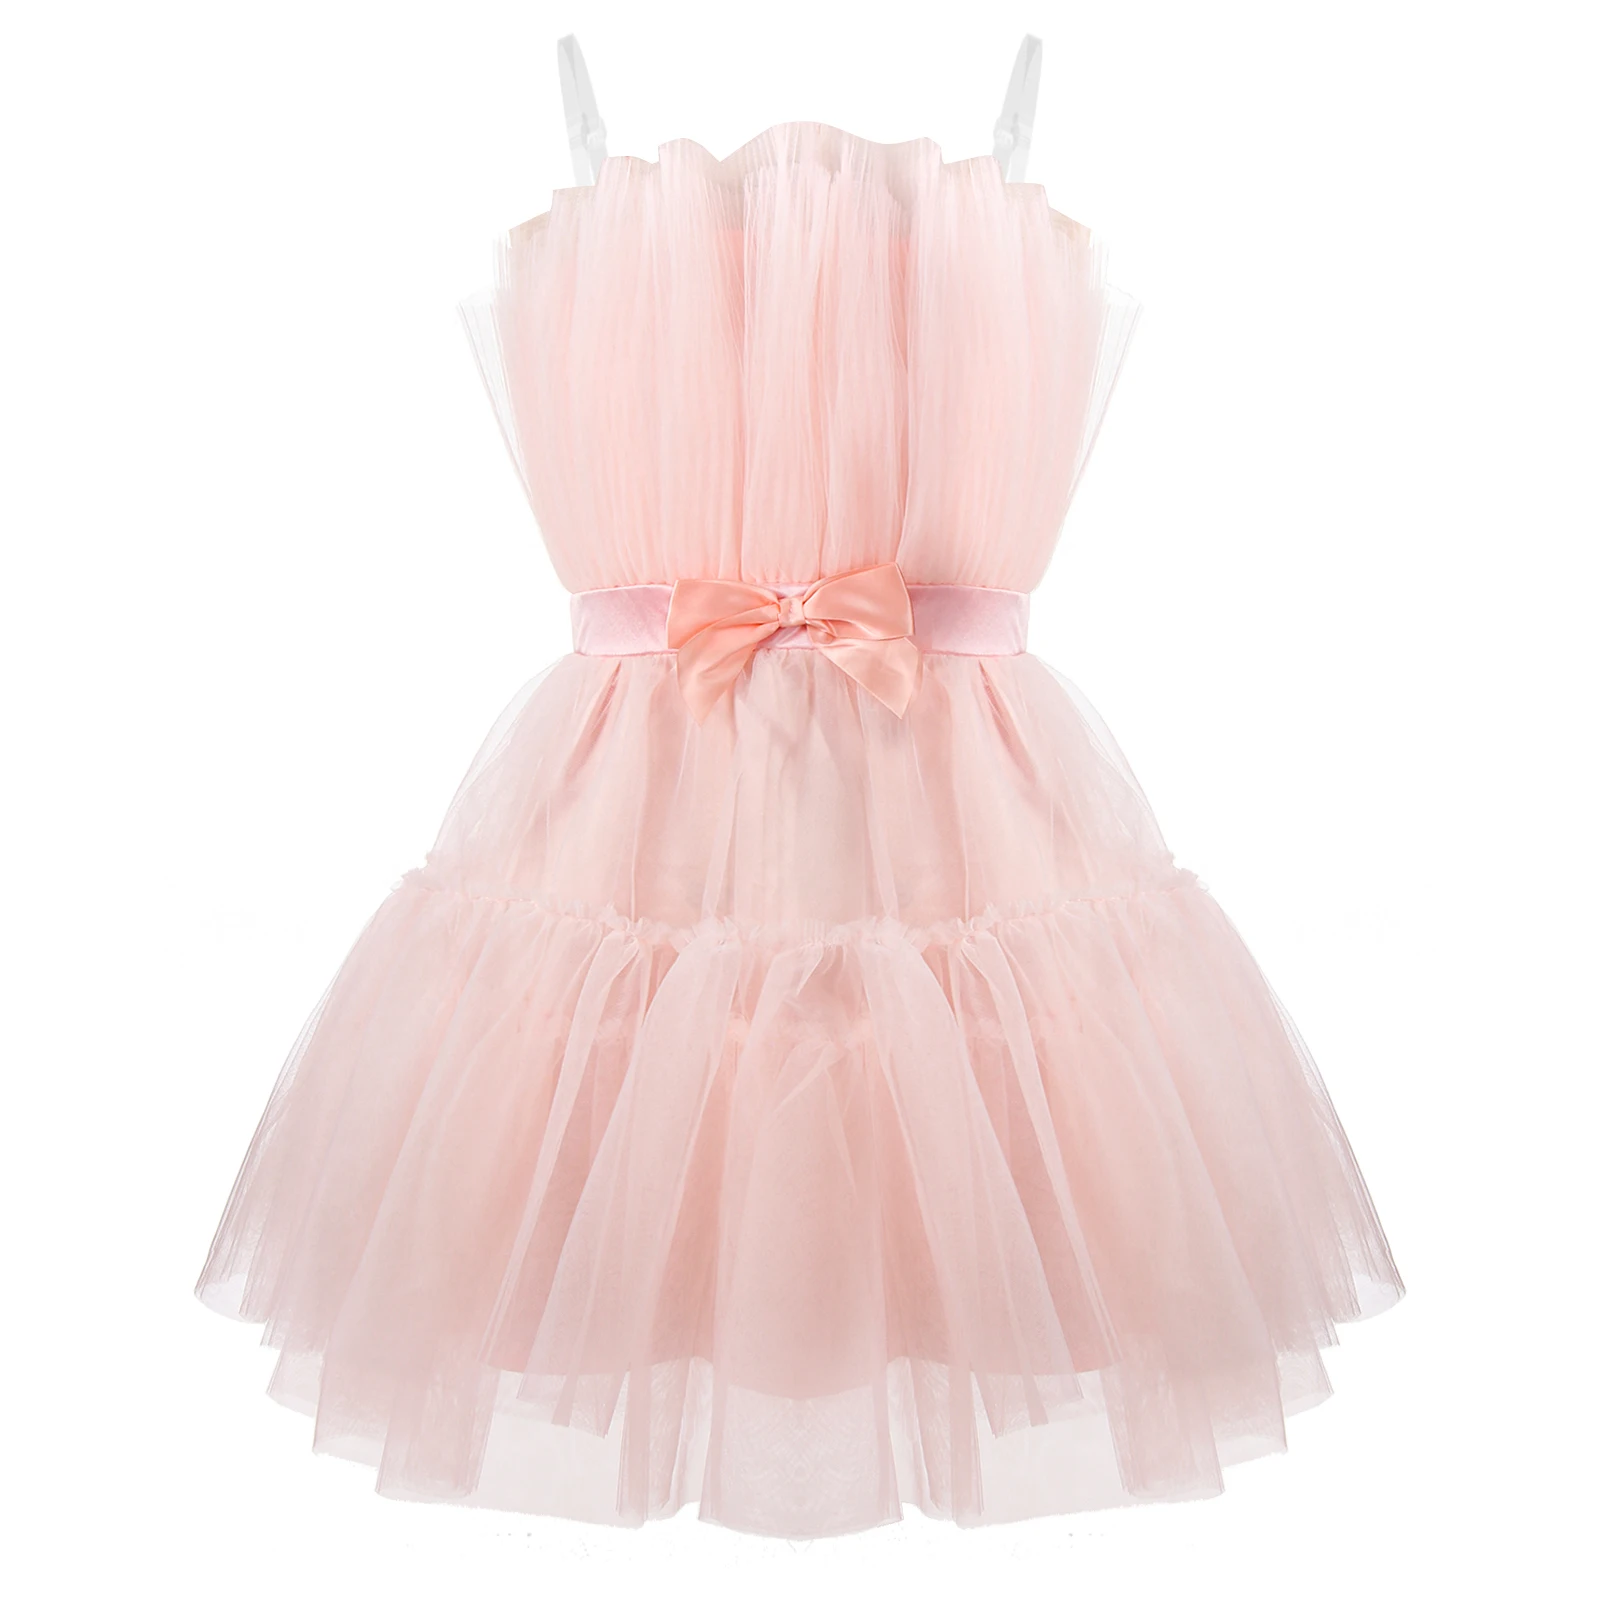 Choomomo Bayan Saf Straplez Prenses Kısa Elbiseler Çok Katmanlı Örgü Yüksek Bel Hattı Parti Elbise İlmek ile Doğum Günü için . ' - ' . 3